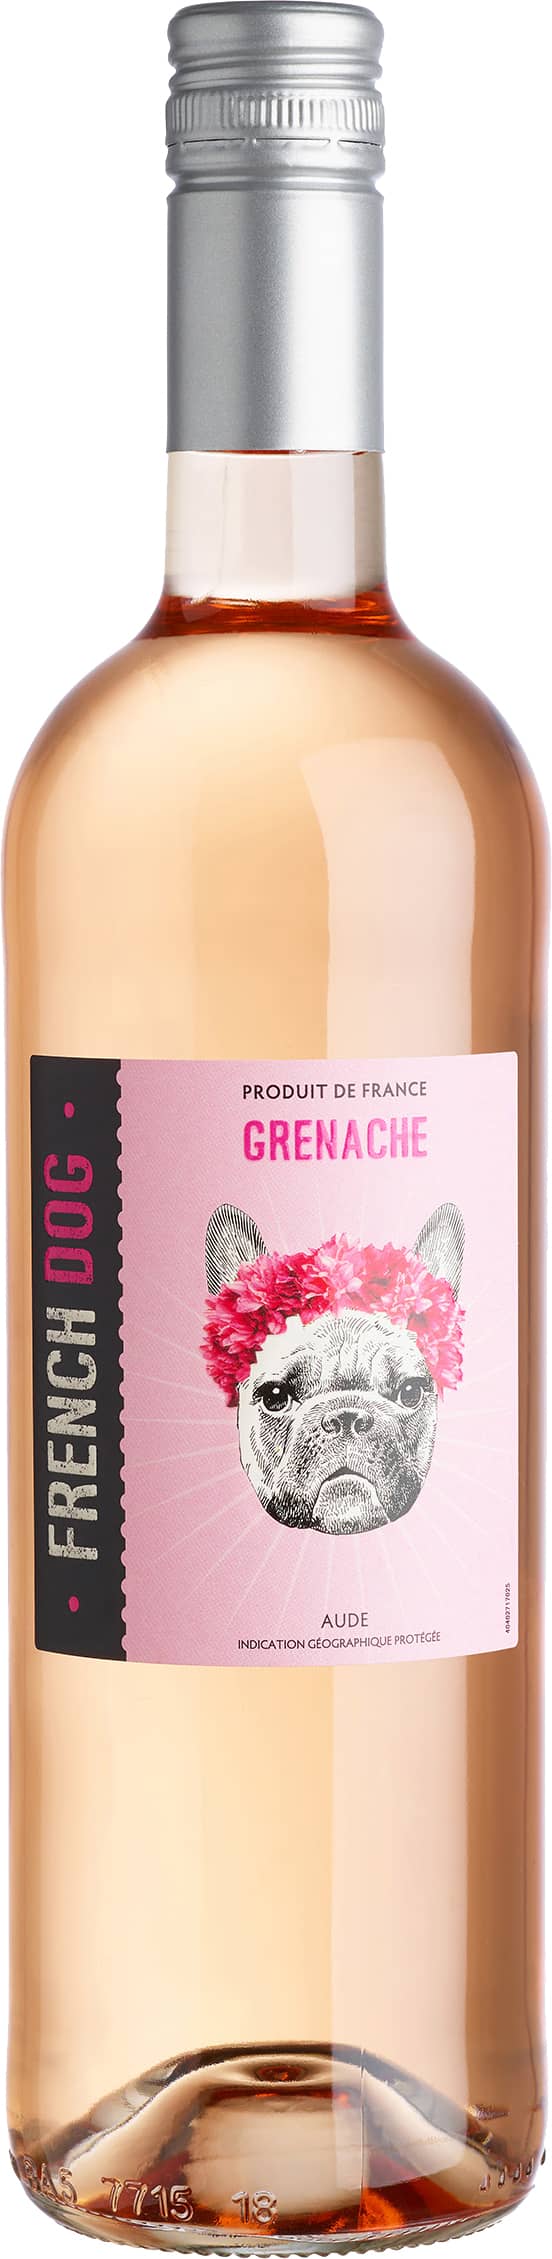 French Dog Grenache